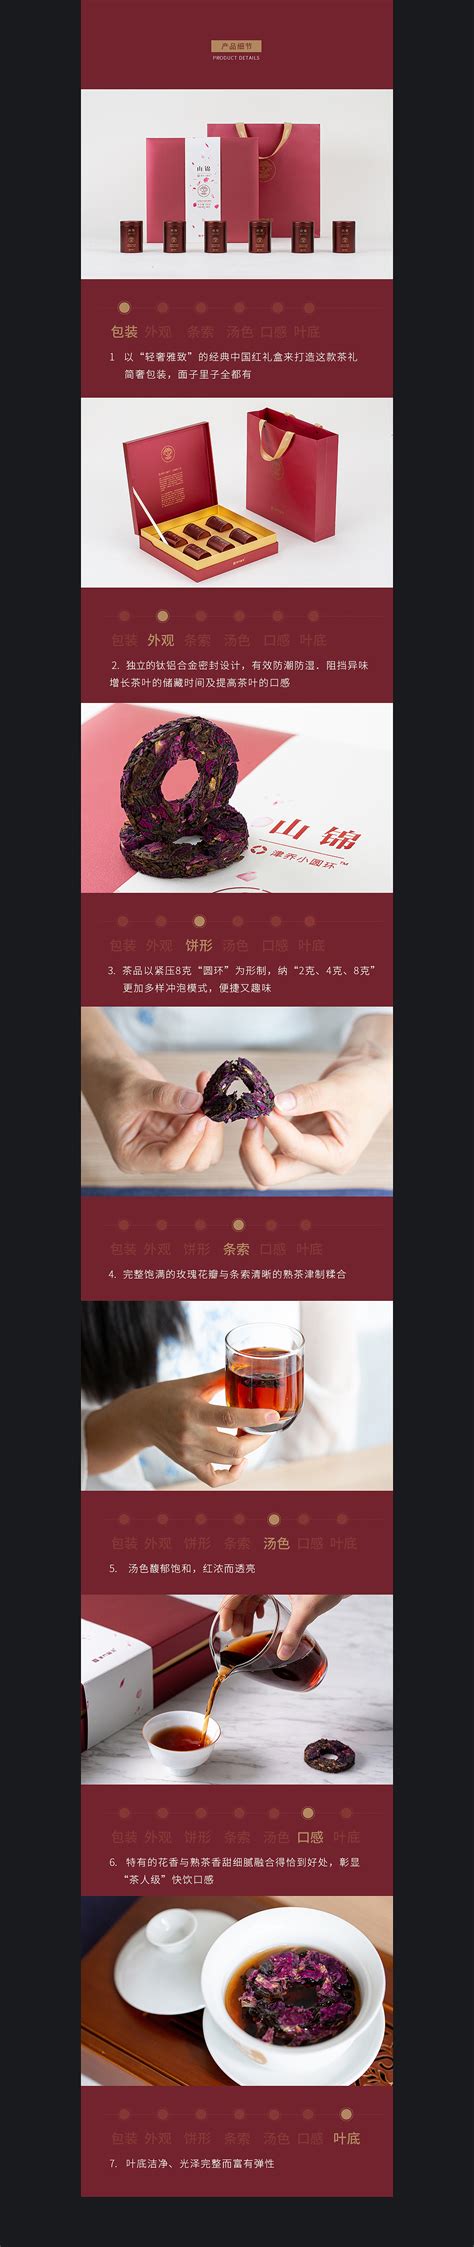 普洱茶画册设计_素材中国sccnn.com